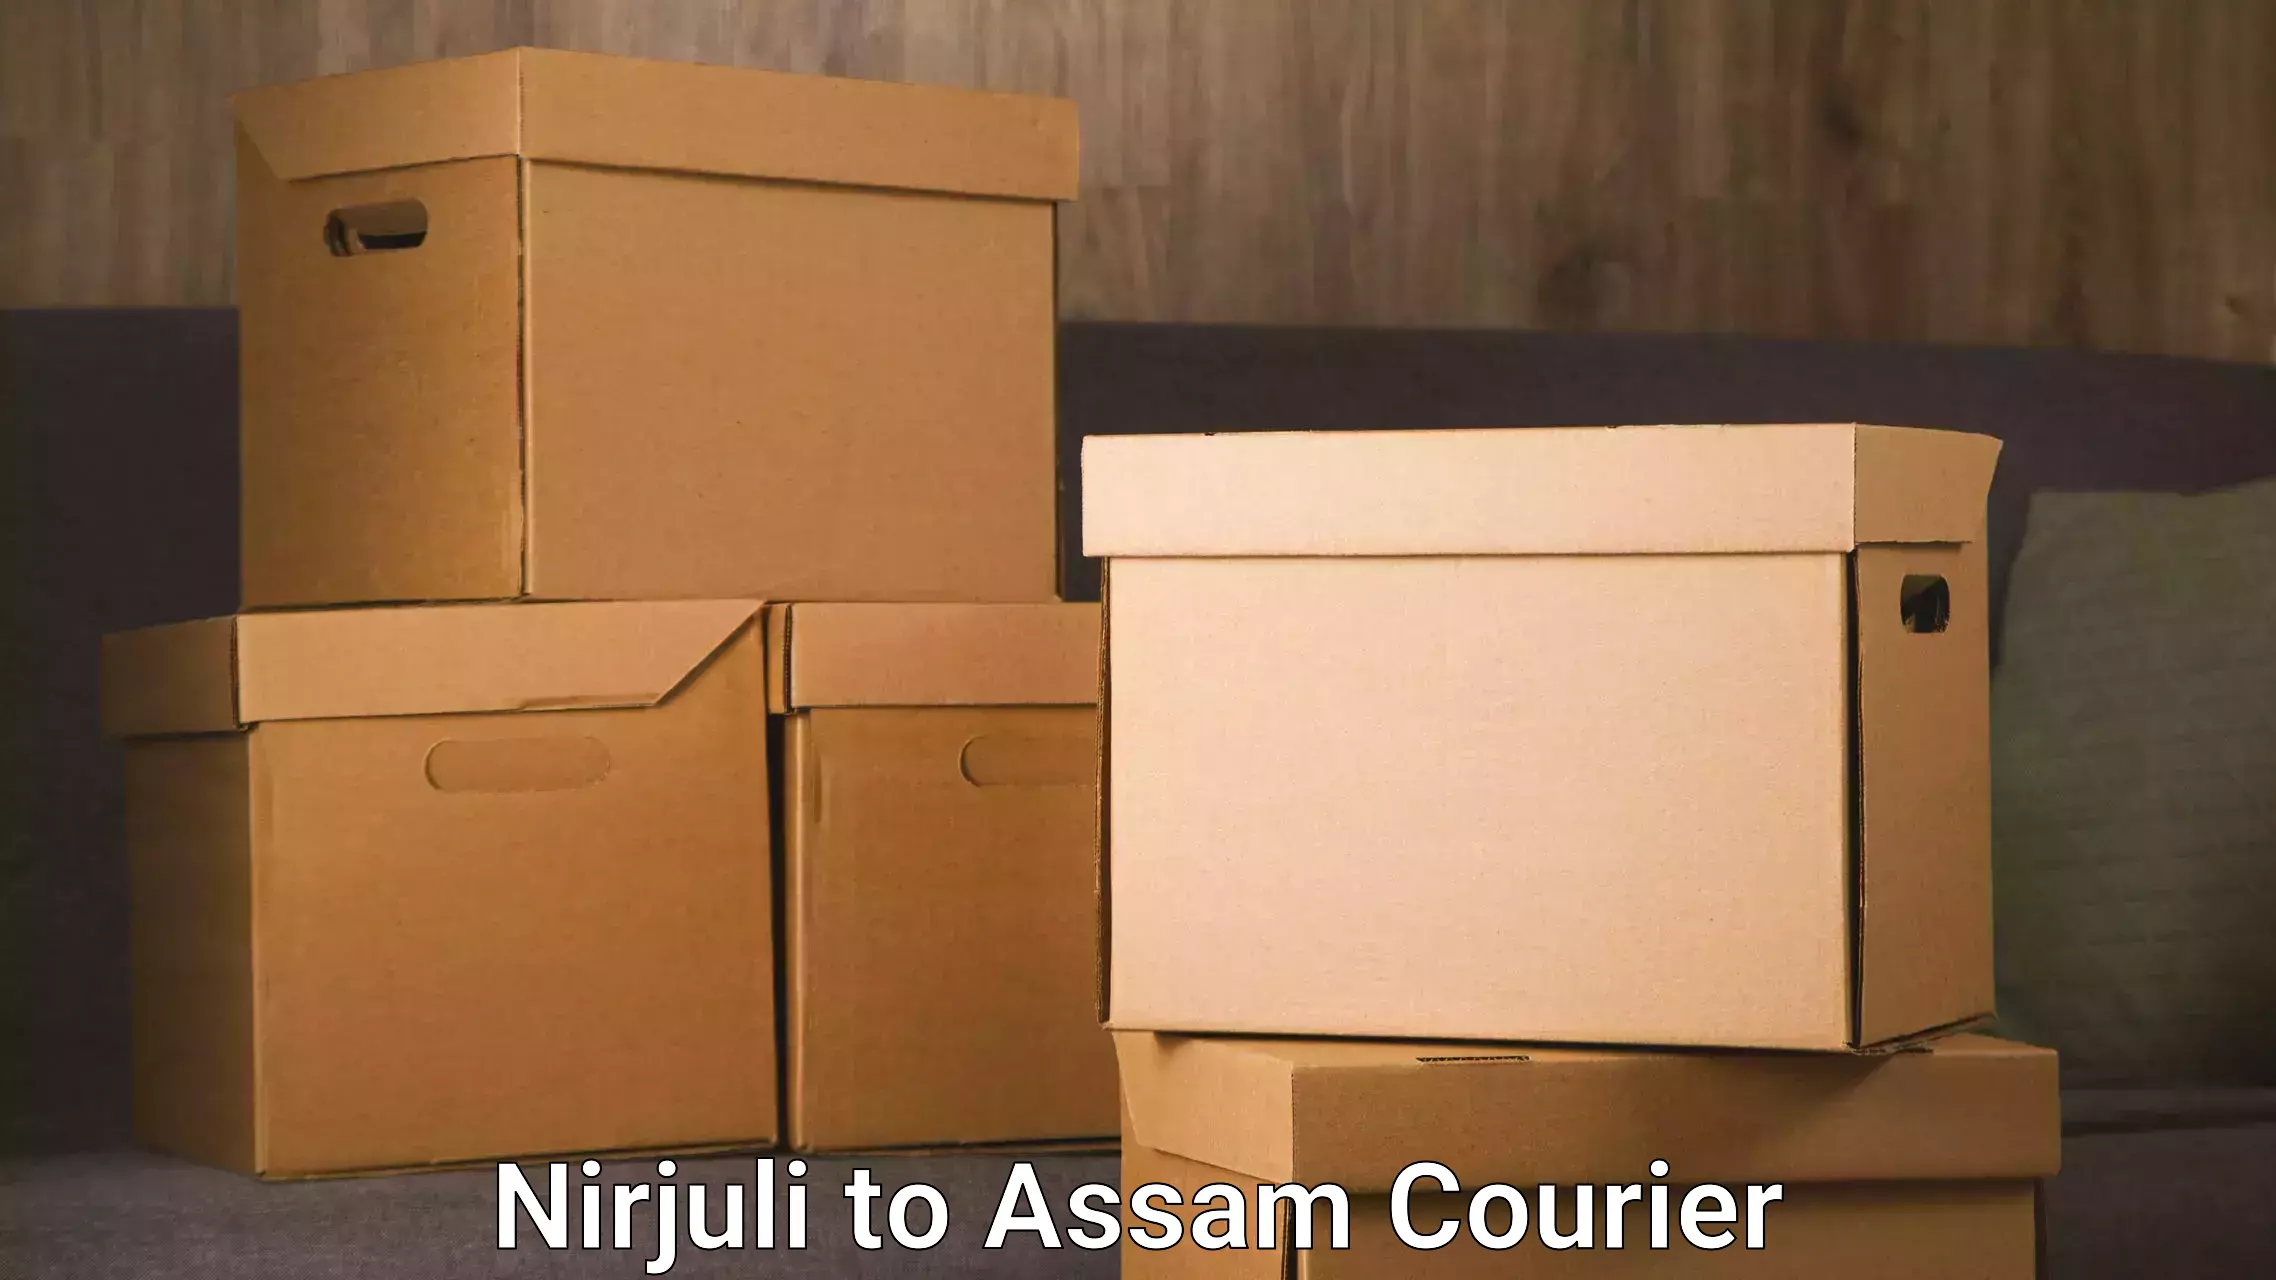 Custom courier packaging in Nirjuli to Hailakandi